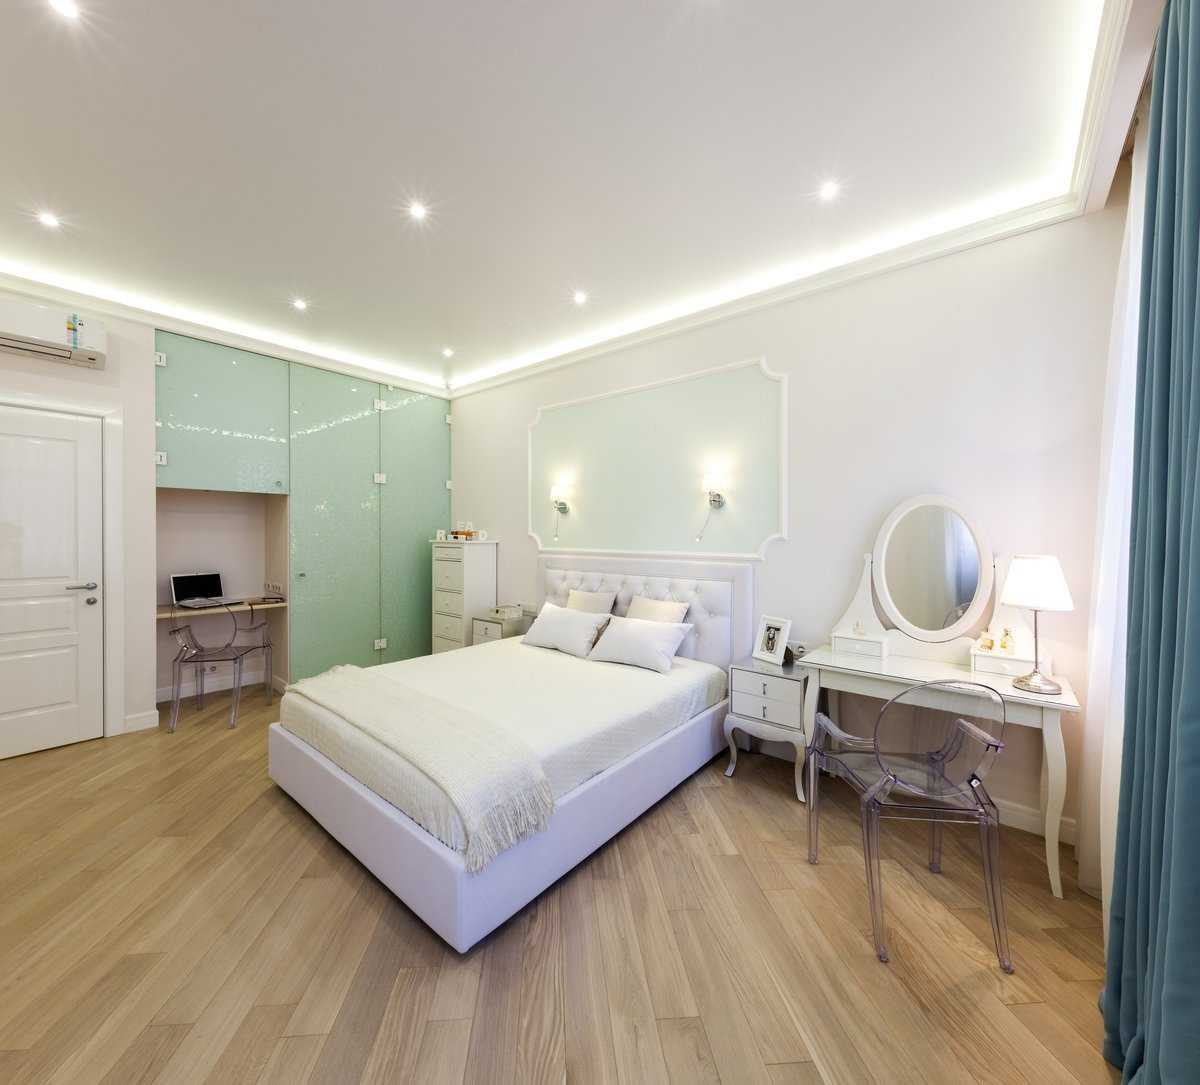 Анализ того как лучше подобрать натяжные потолки фото для спальни